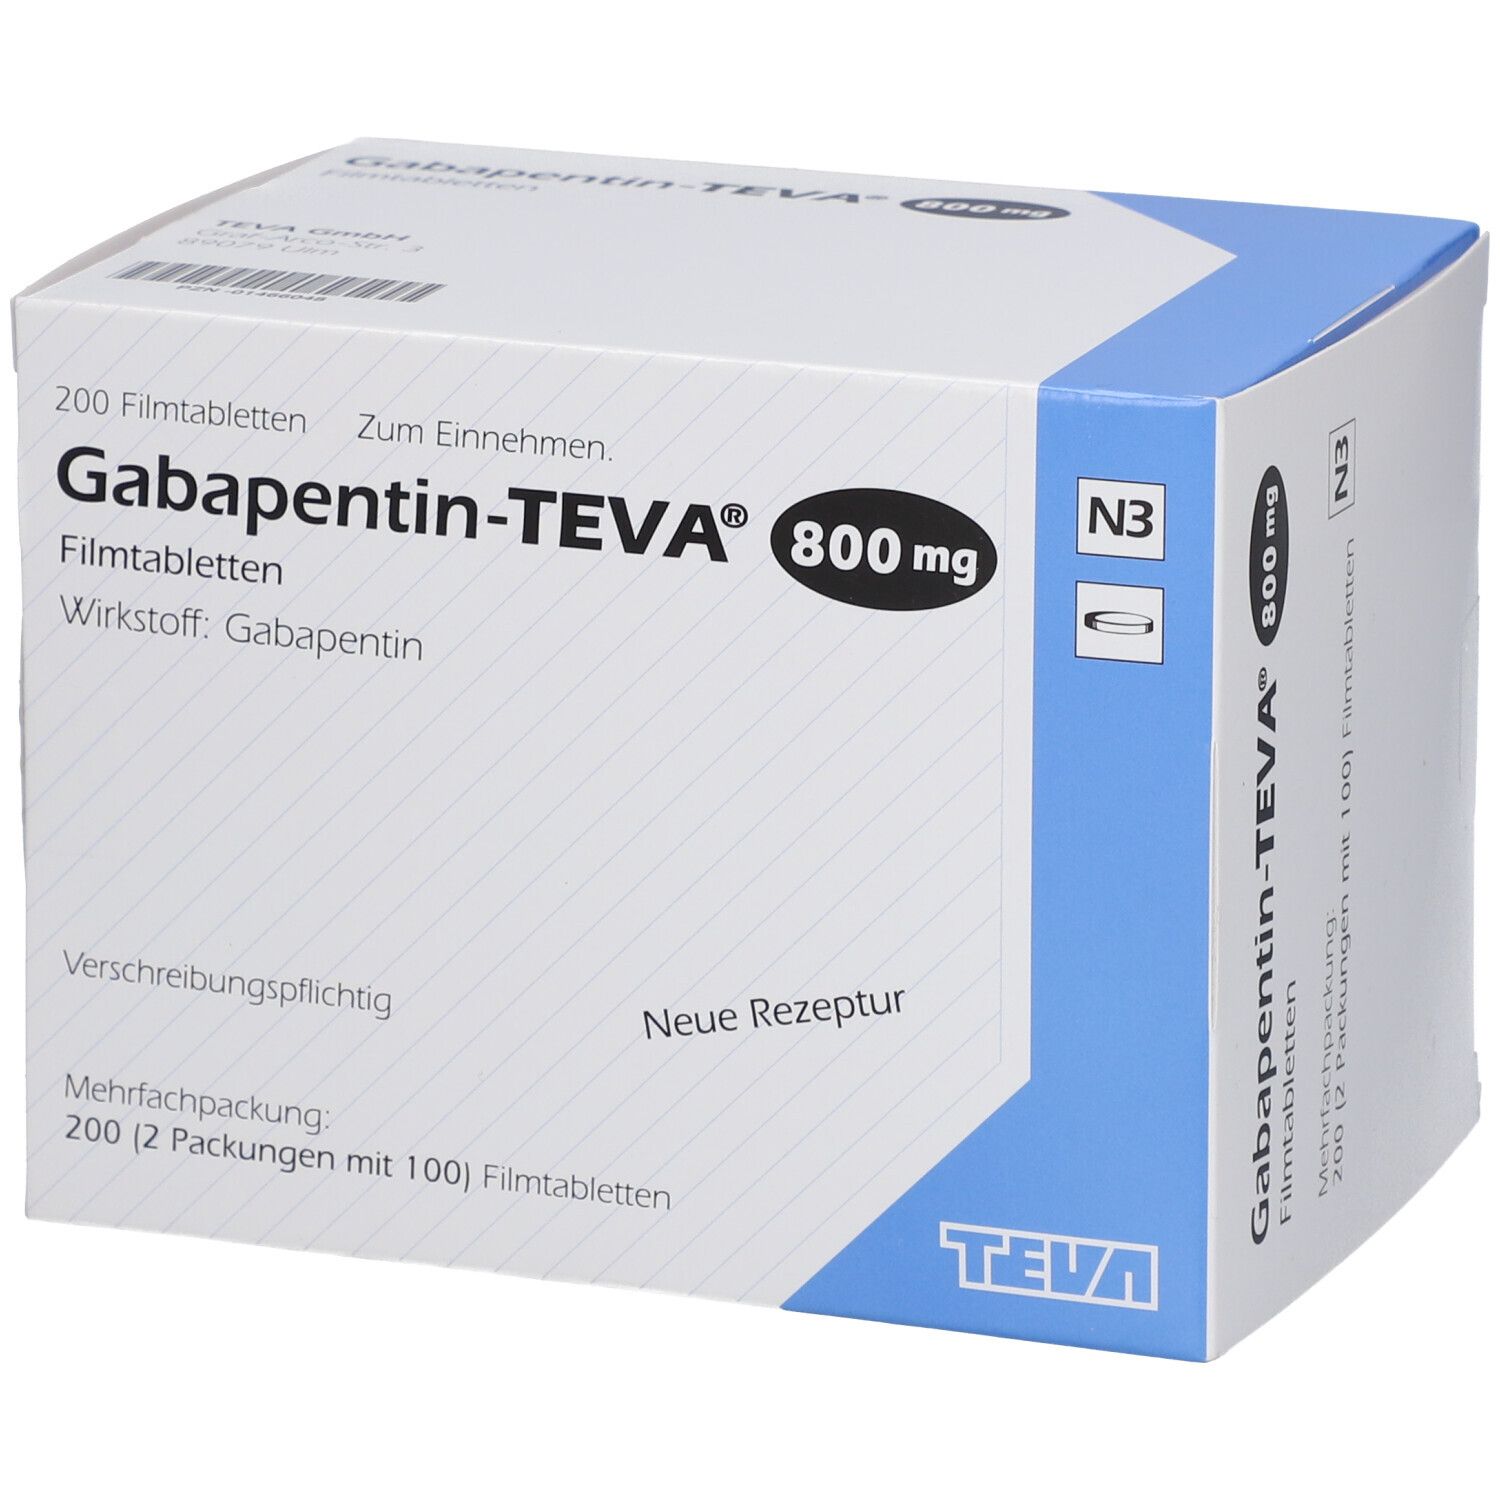 Габапентин 200. Нейронтин 800 мг. Таблетки от эпилепсии габапентин. Габапентин таблетки. Габапентин канон капсулы аналоги